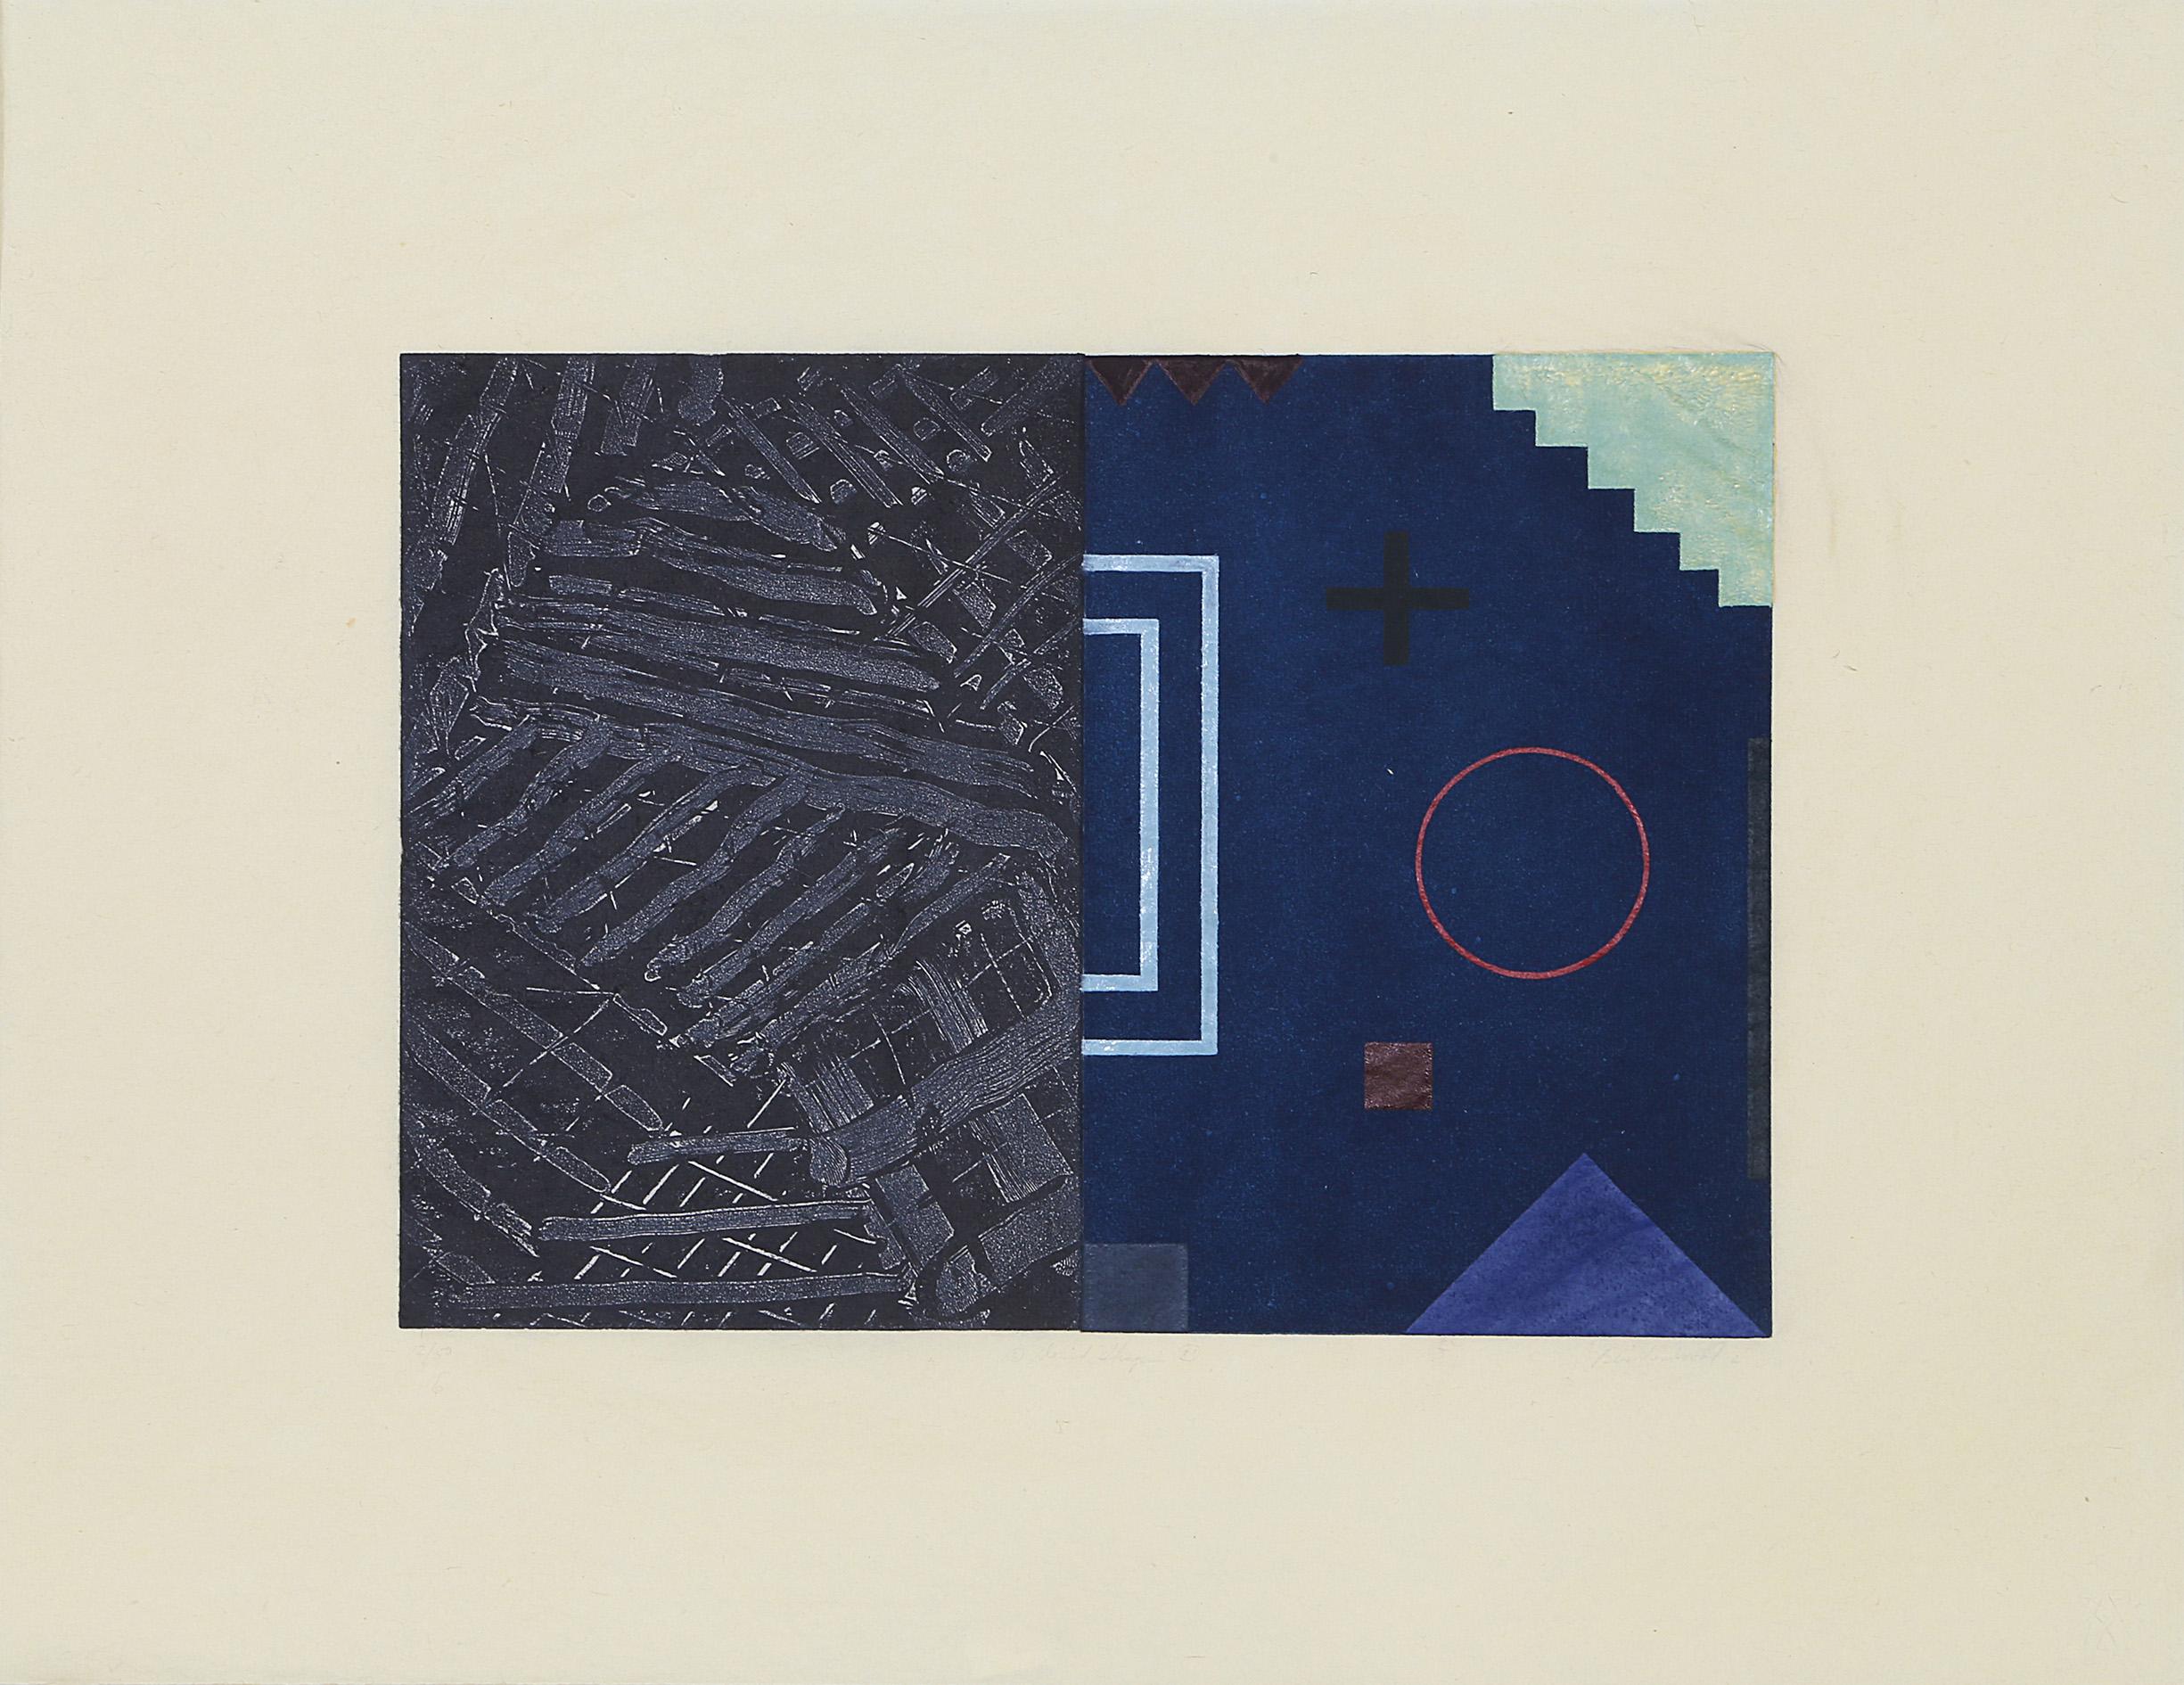 Ein detaillierter, abstrakter, geometrischer Druck von David Shapiro mit einer Mischung aus Aquatinta und Radierung auf Sekishu, einer Art handgeschöpftem japanischem Papier. Die eine Hälfte der Komposition besteht aus unordentlichen, fast